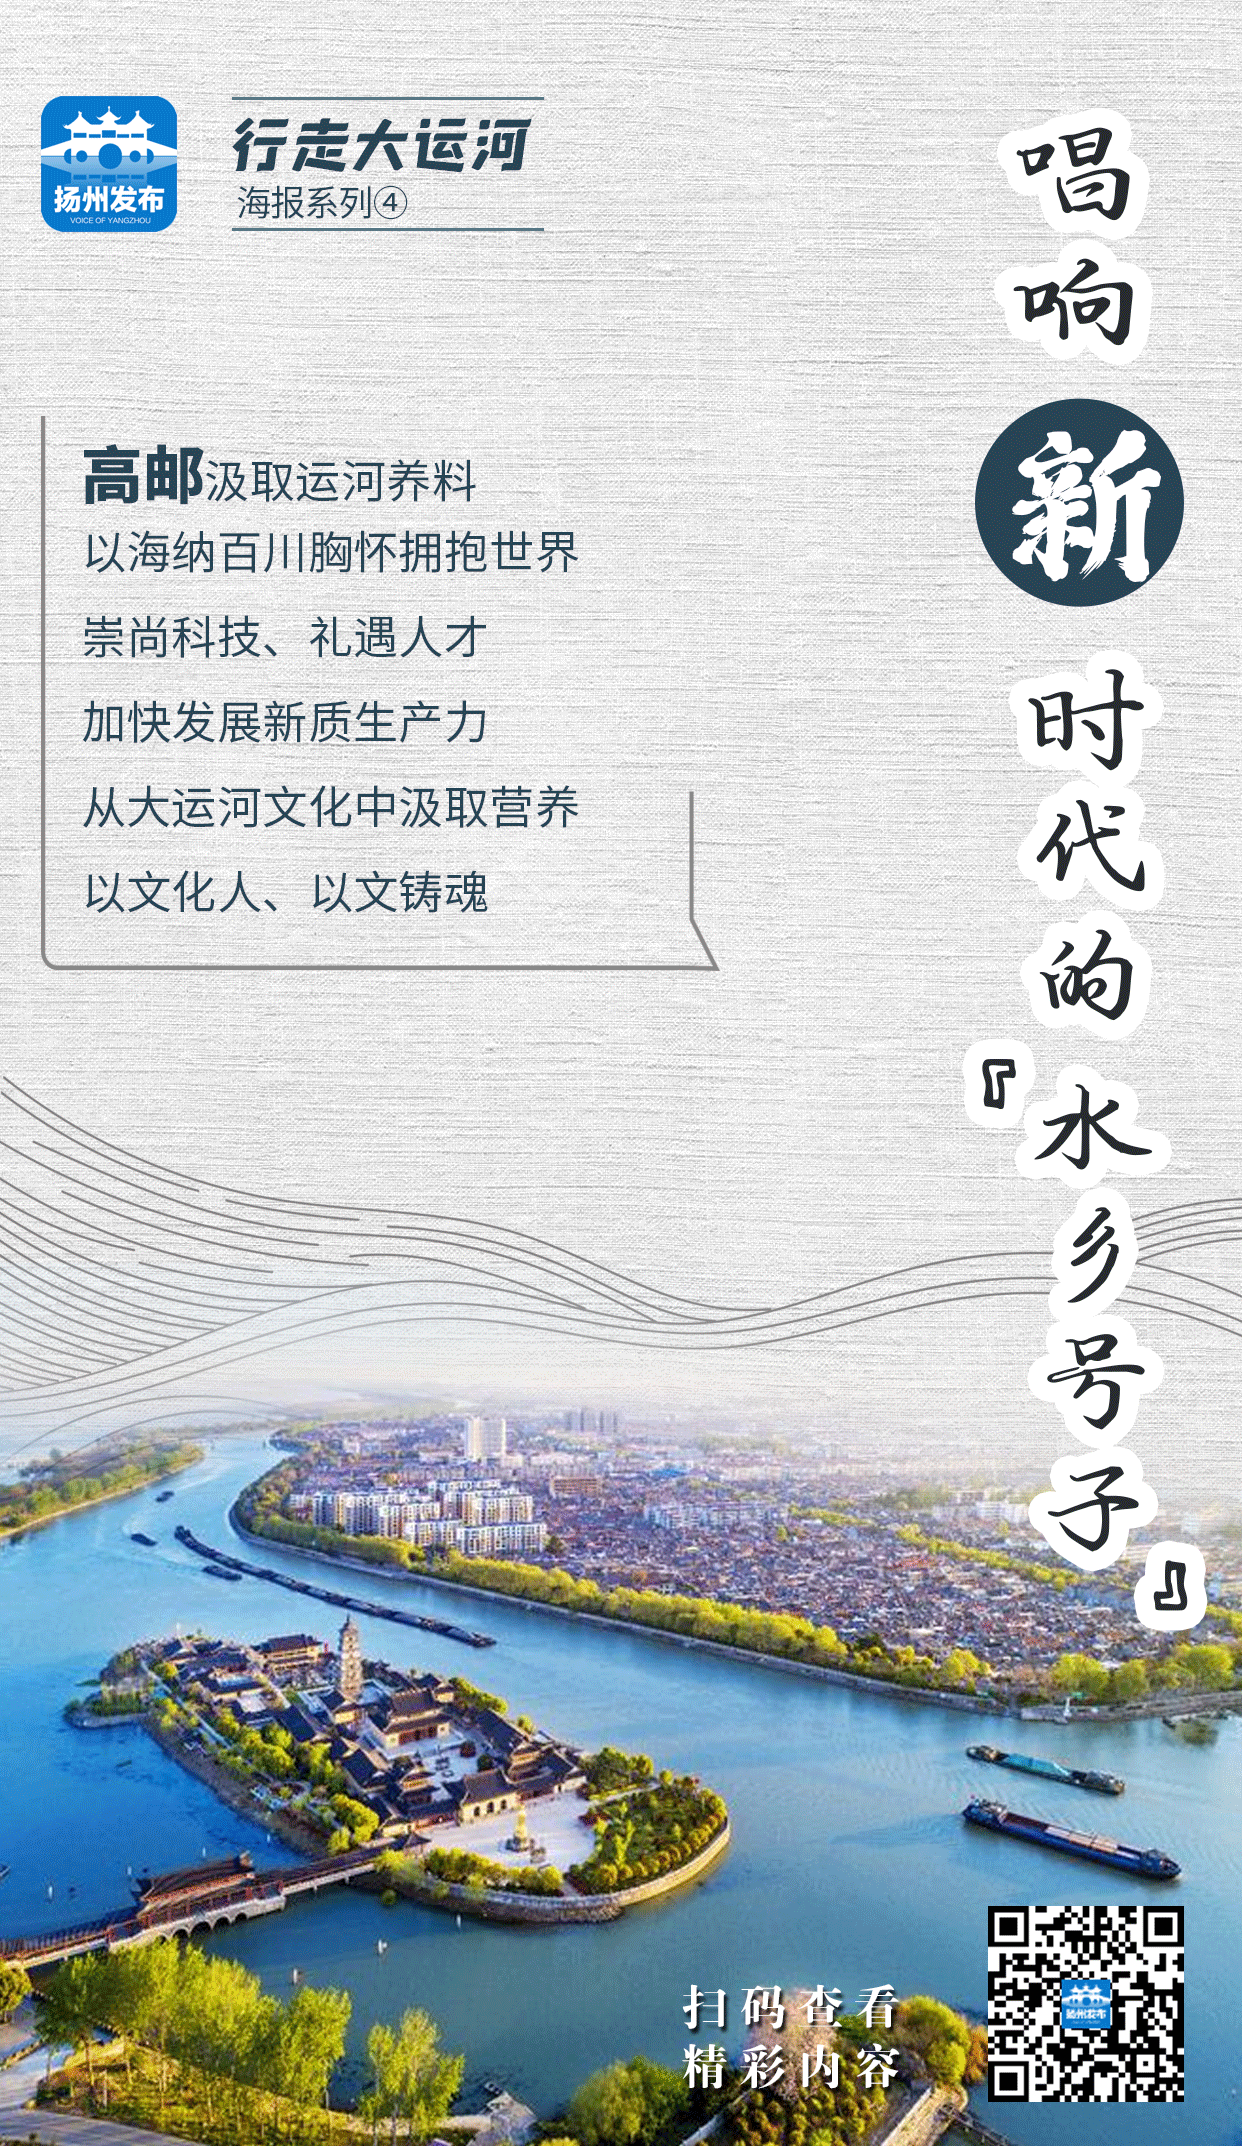 扬州发布系列海报 